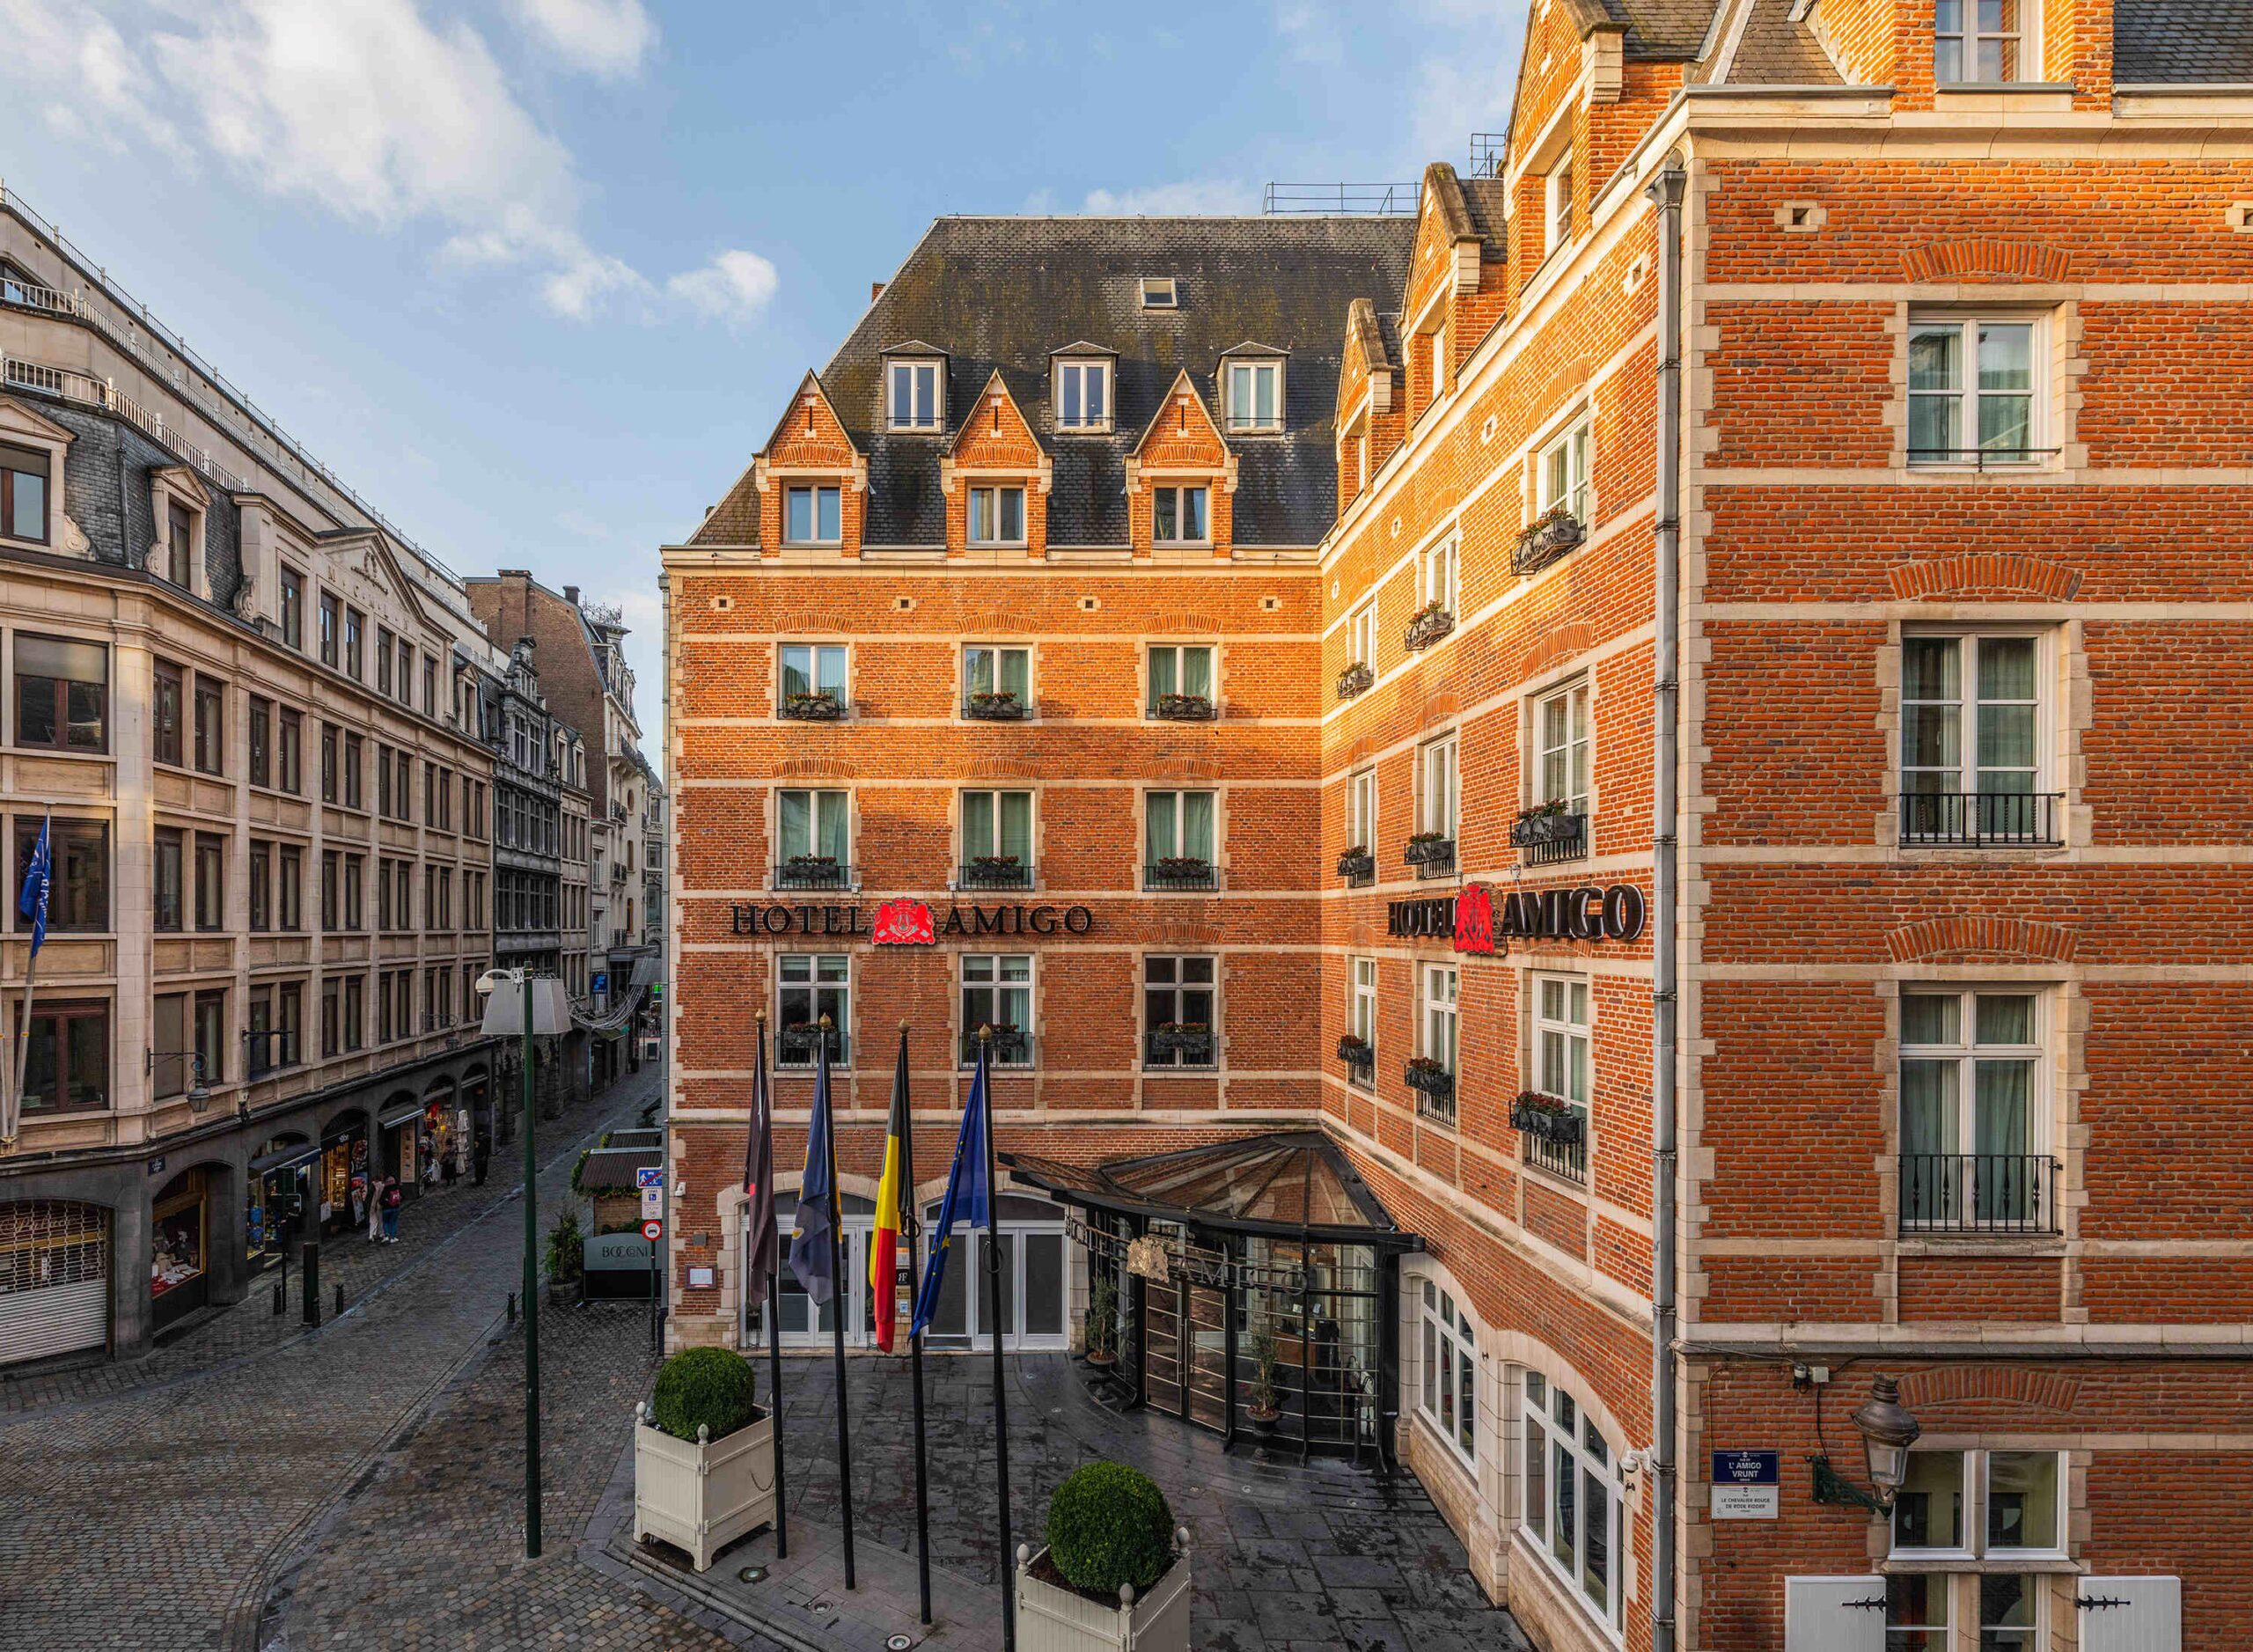 Descubra o autêntico Hotel Amigo, da rede Rocco Forte, em Bruxelas